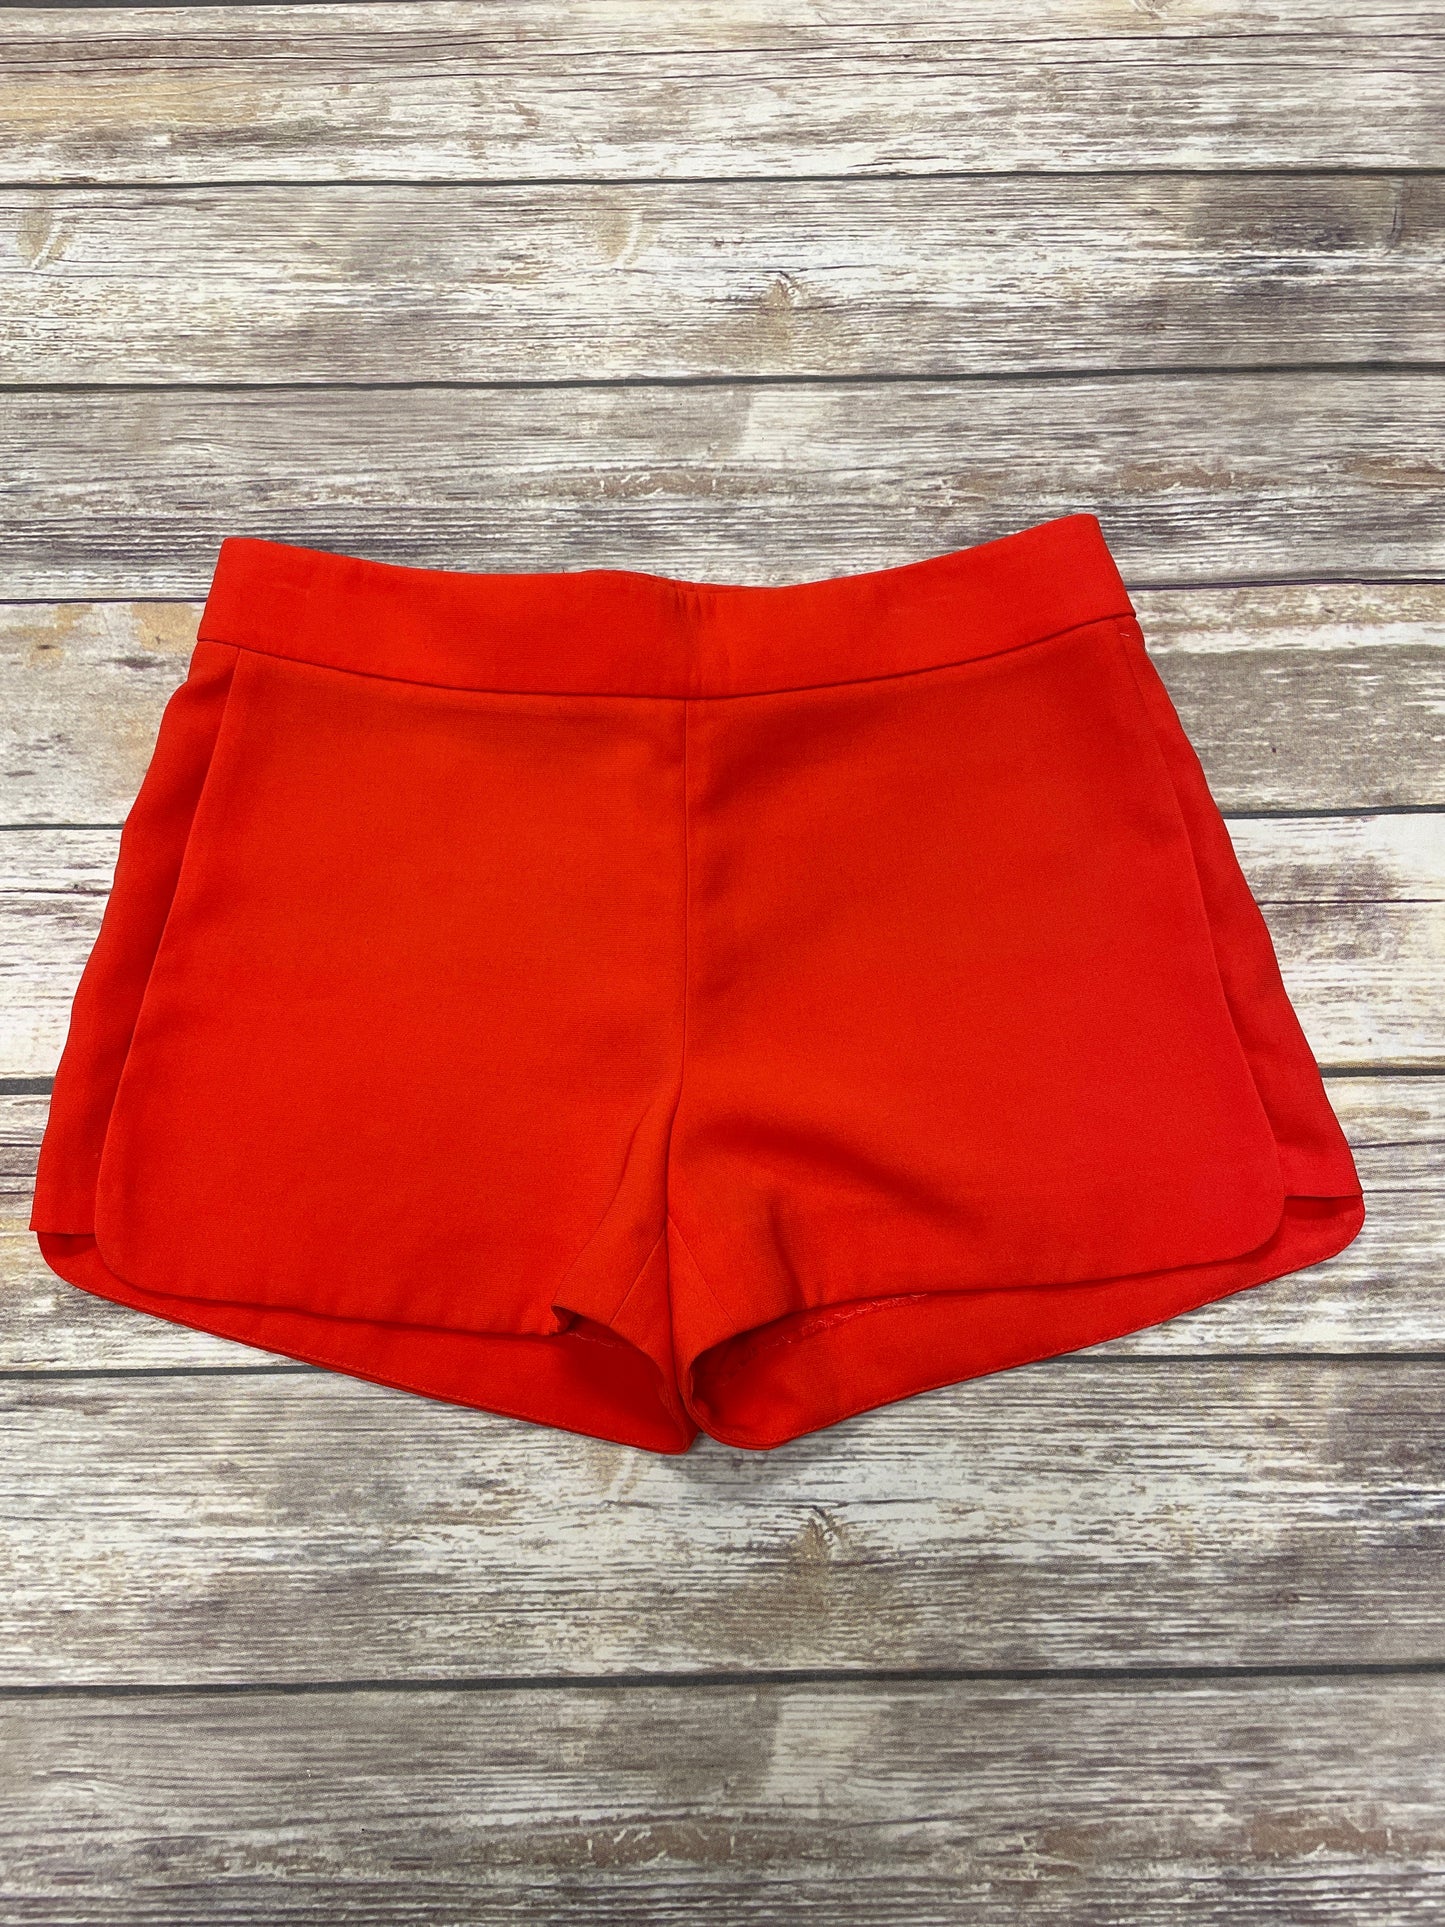 Orange Shorts J. Crew, Size 6